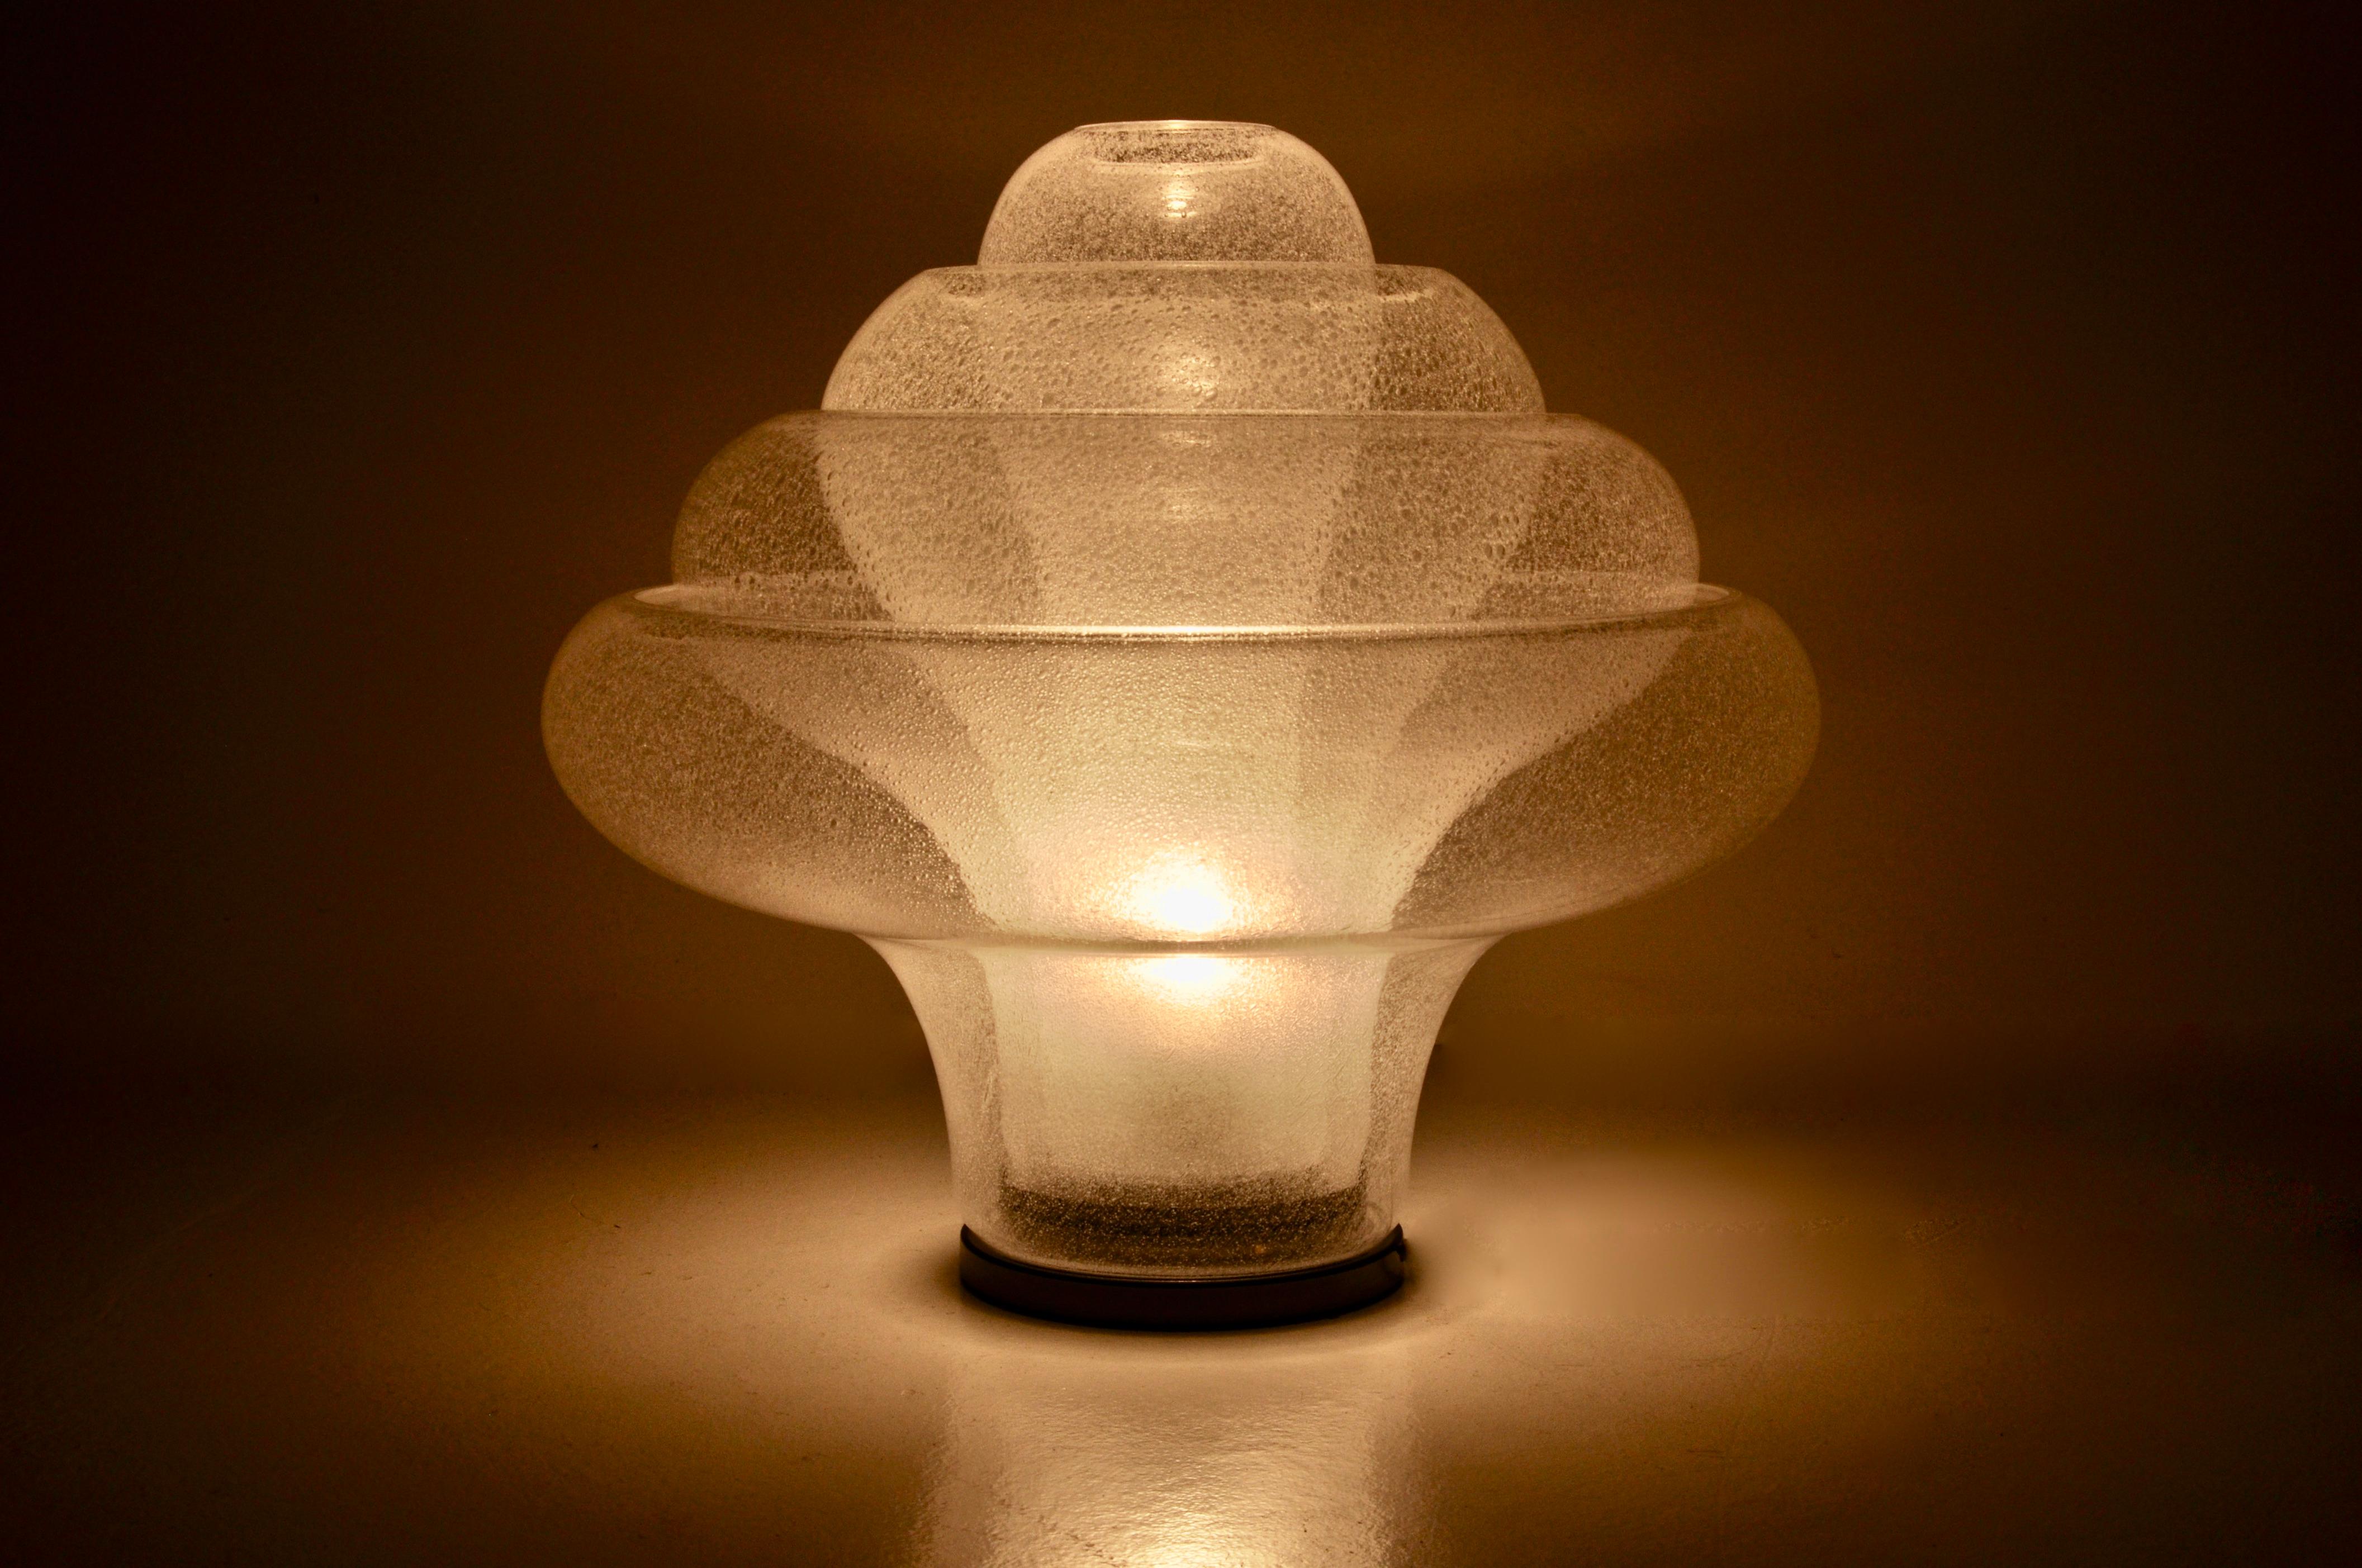 Lampe en verre soufflé de Murano par Carlo Nason pour Mazzega. Modèle LT 3OO. Chaque partie en verre peut être tournée. Usure due au temps et à l'âge de la lampe.